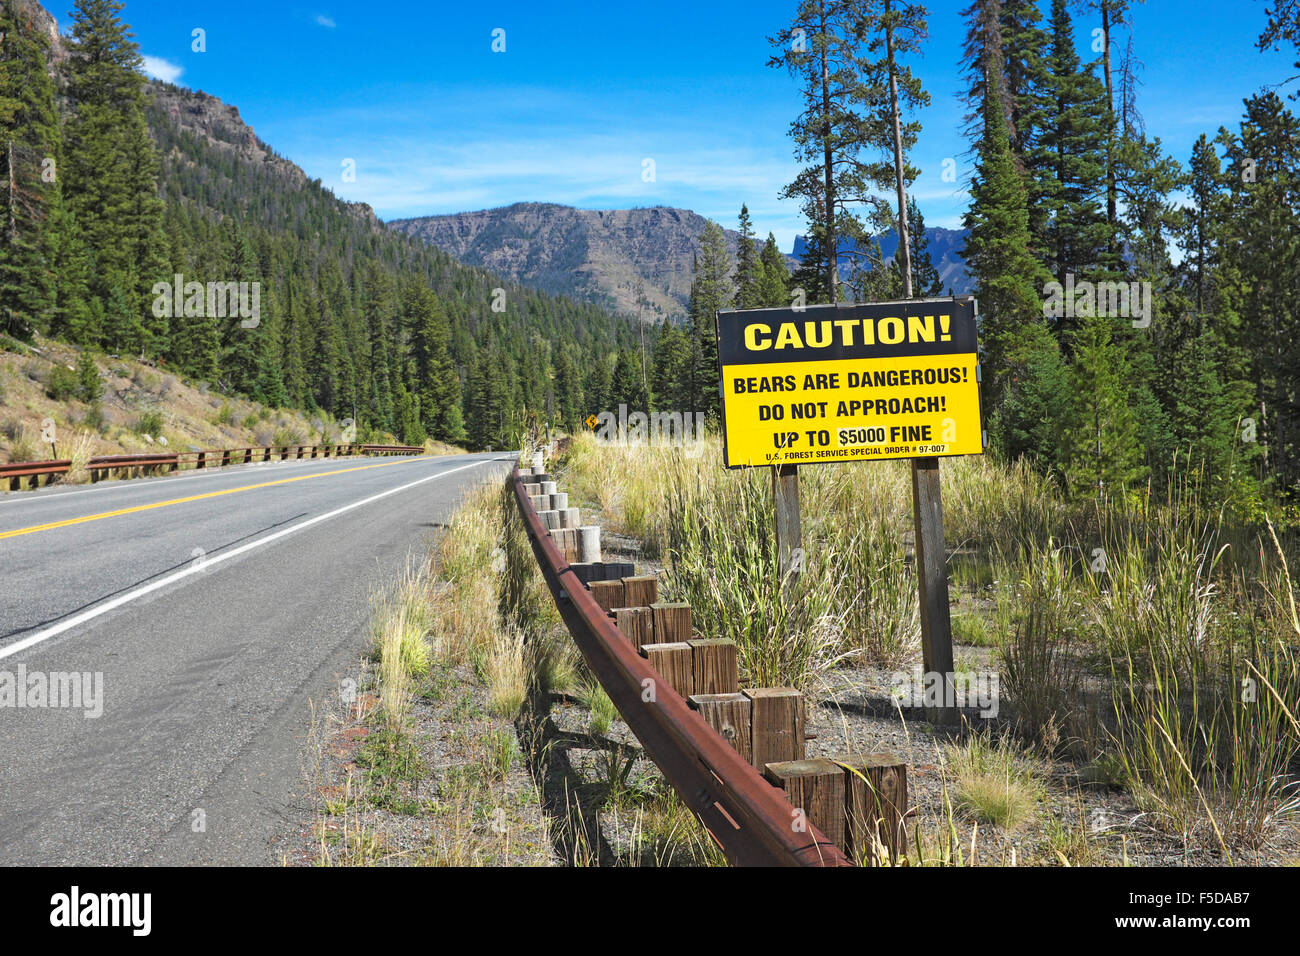 Un segno lungo la forcella del nord del fiume Shoshone in Wyoming, avviso ai partecipanti di essere consapevole del fatto che vi sono orsi grizzly nelle vicinanze. Foto Stock